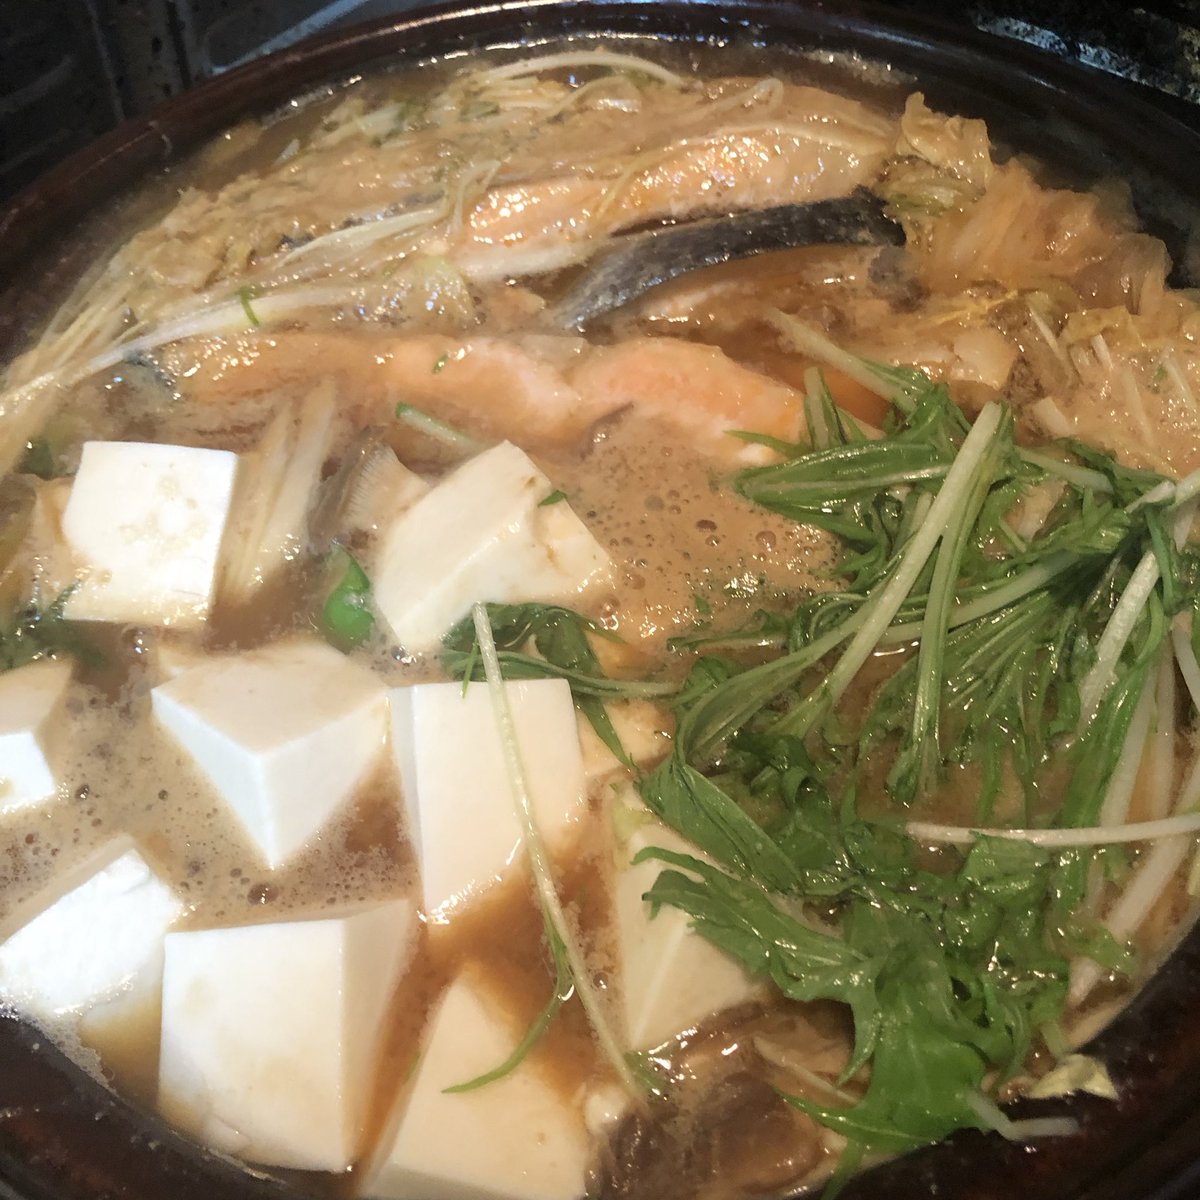 鮭味噌鍋ランチ🐟
#ぱぱぴえん 
#料理男子 
#ランチ 
#昼ごはん 
#魚料理